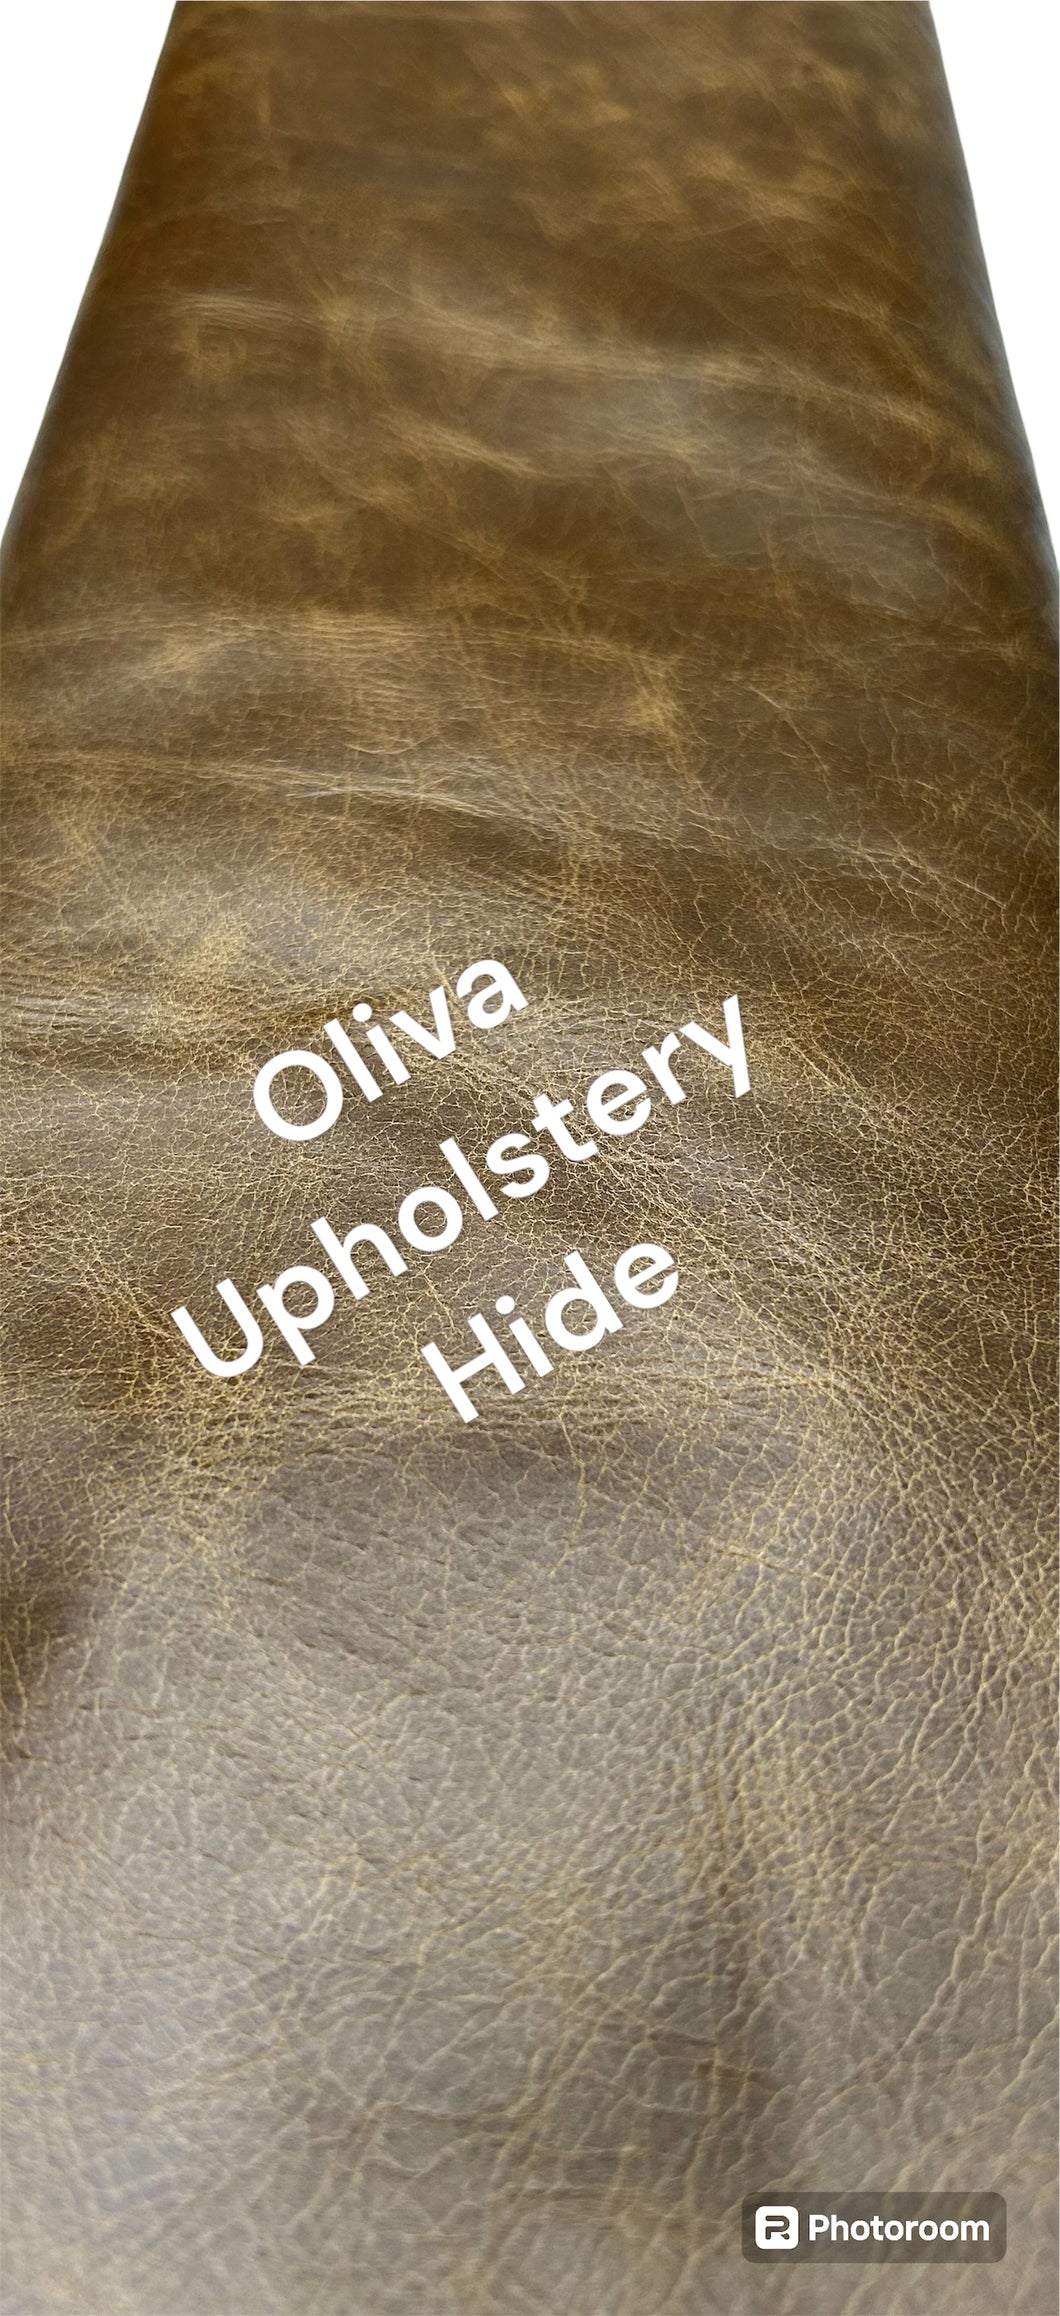 Oliva upholstery hide